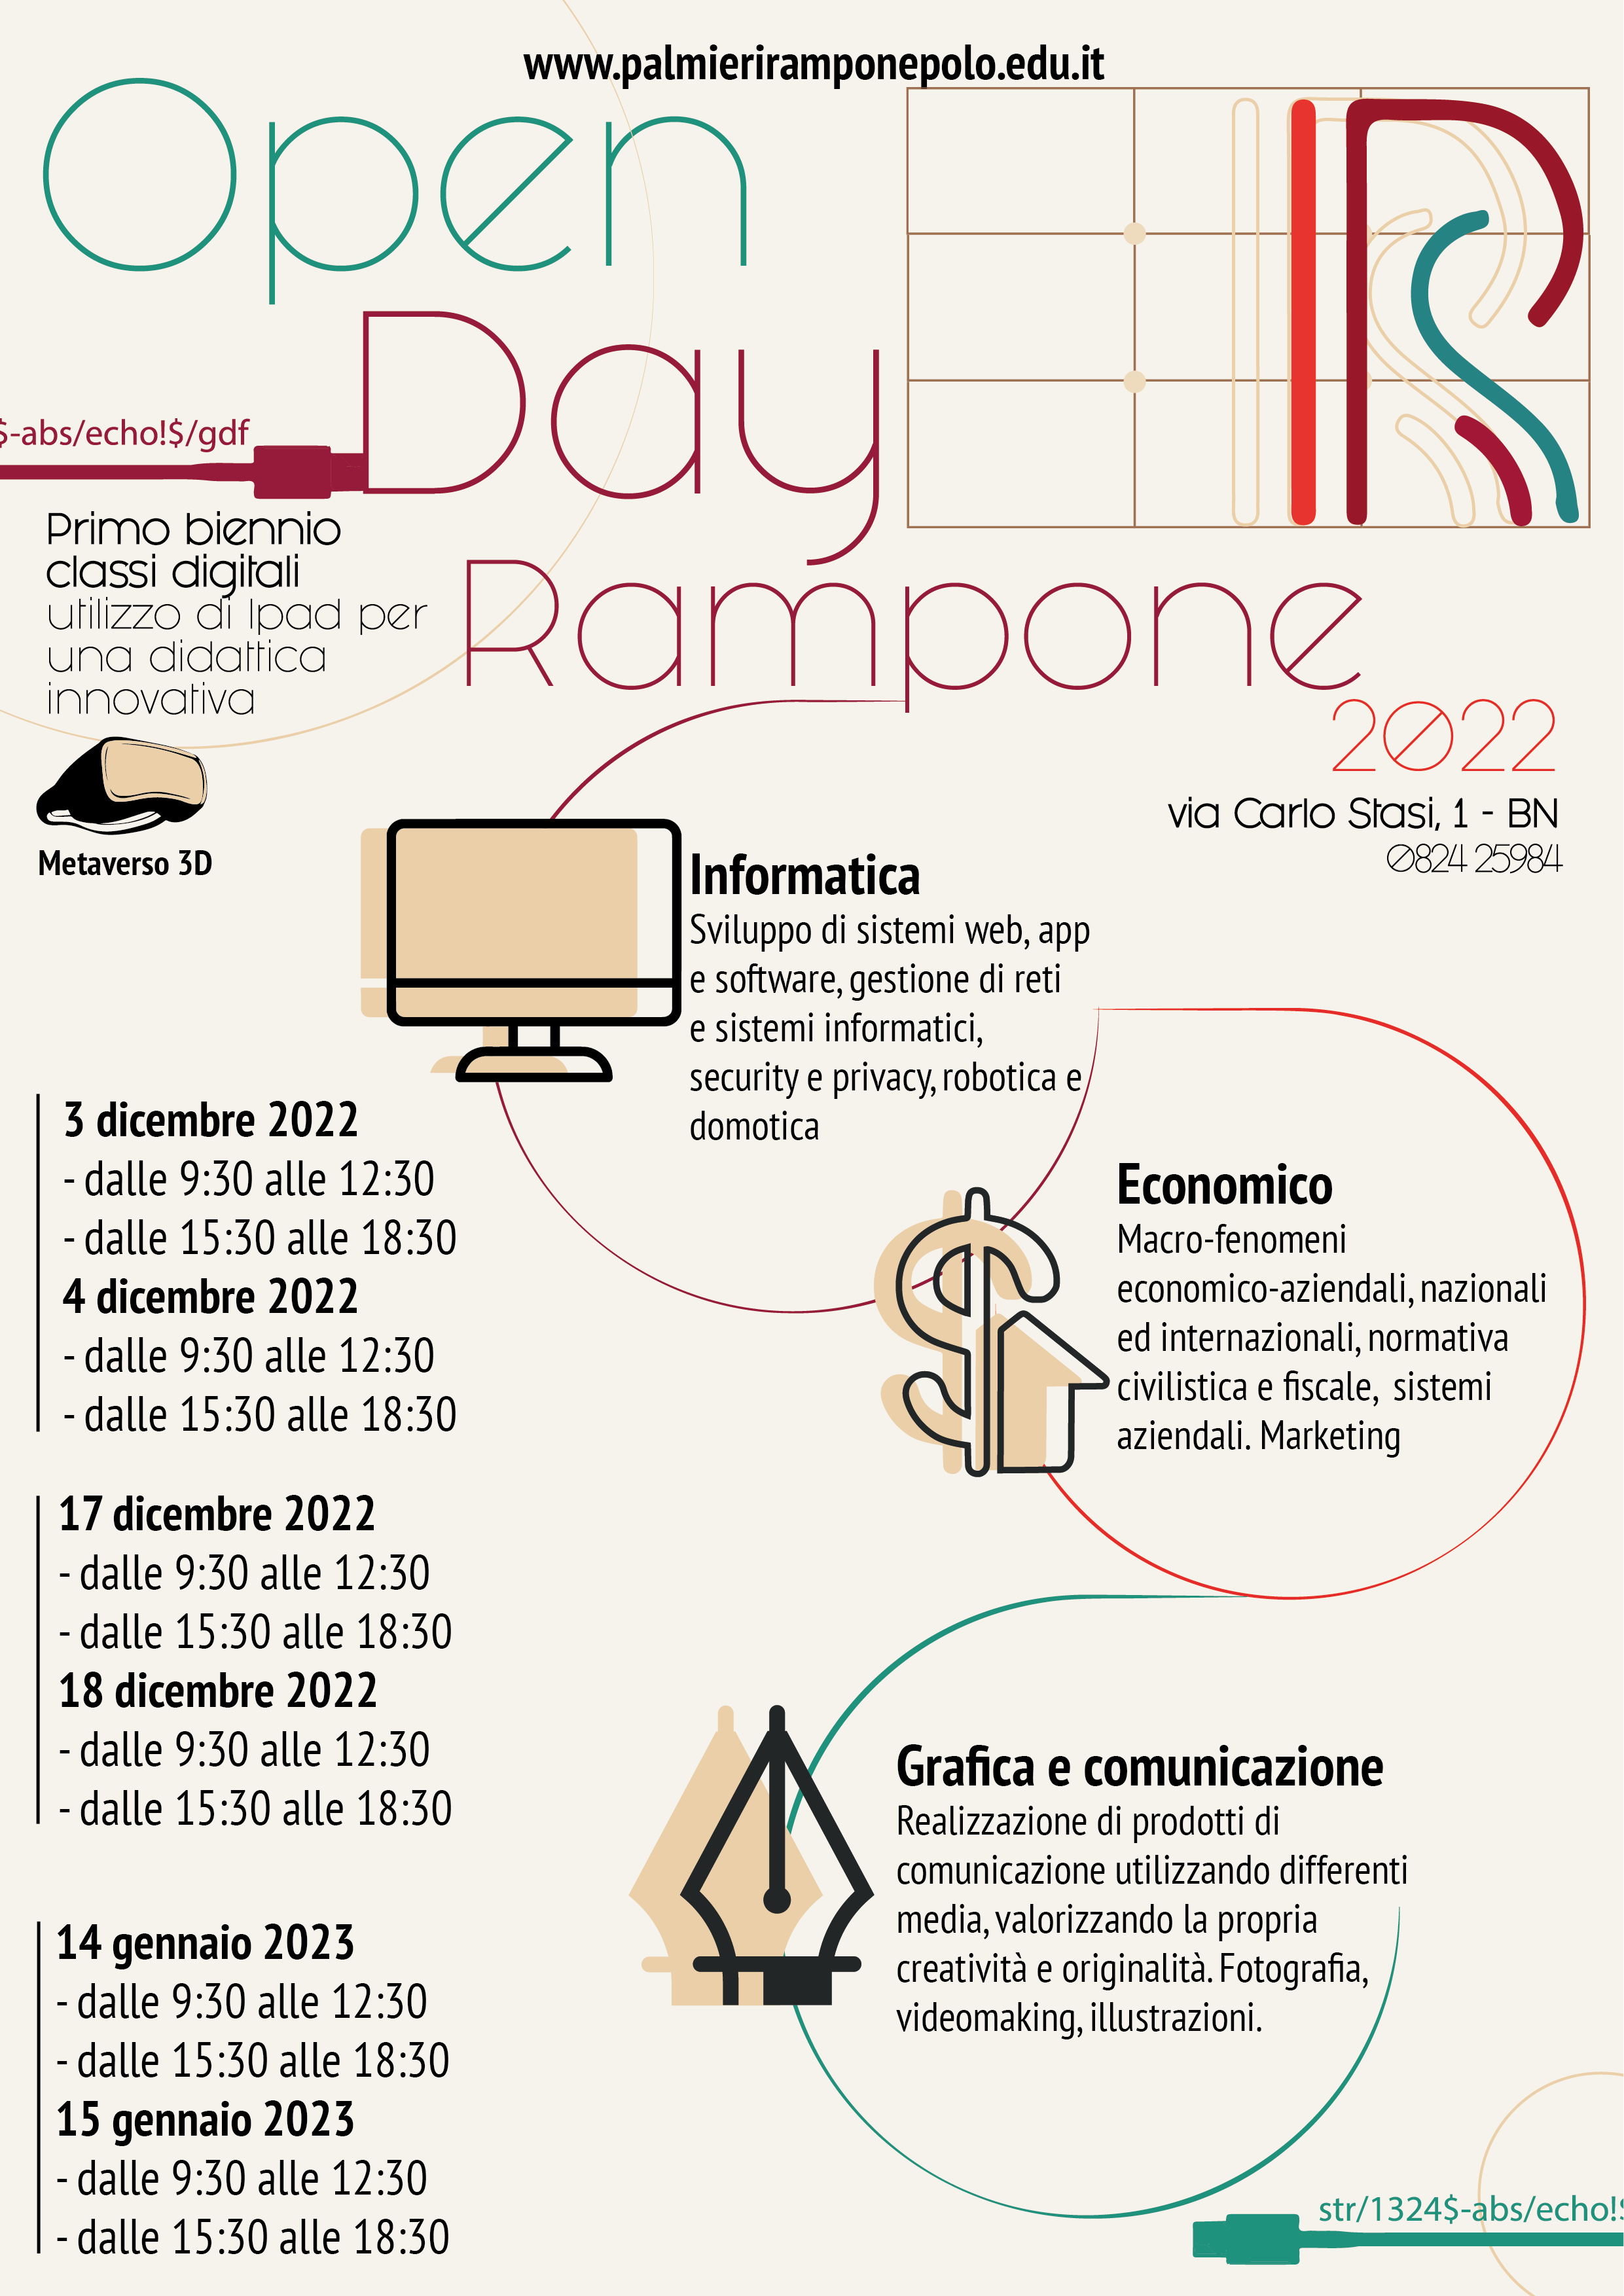 Benevento| Al “Palmieri Rampone Polo” è tempo di Open Day